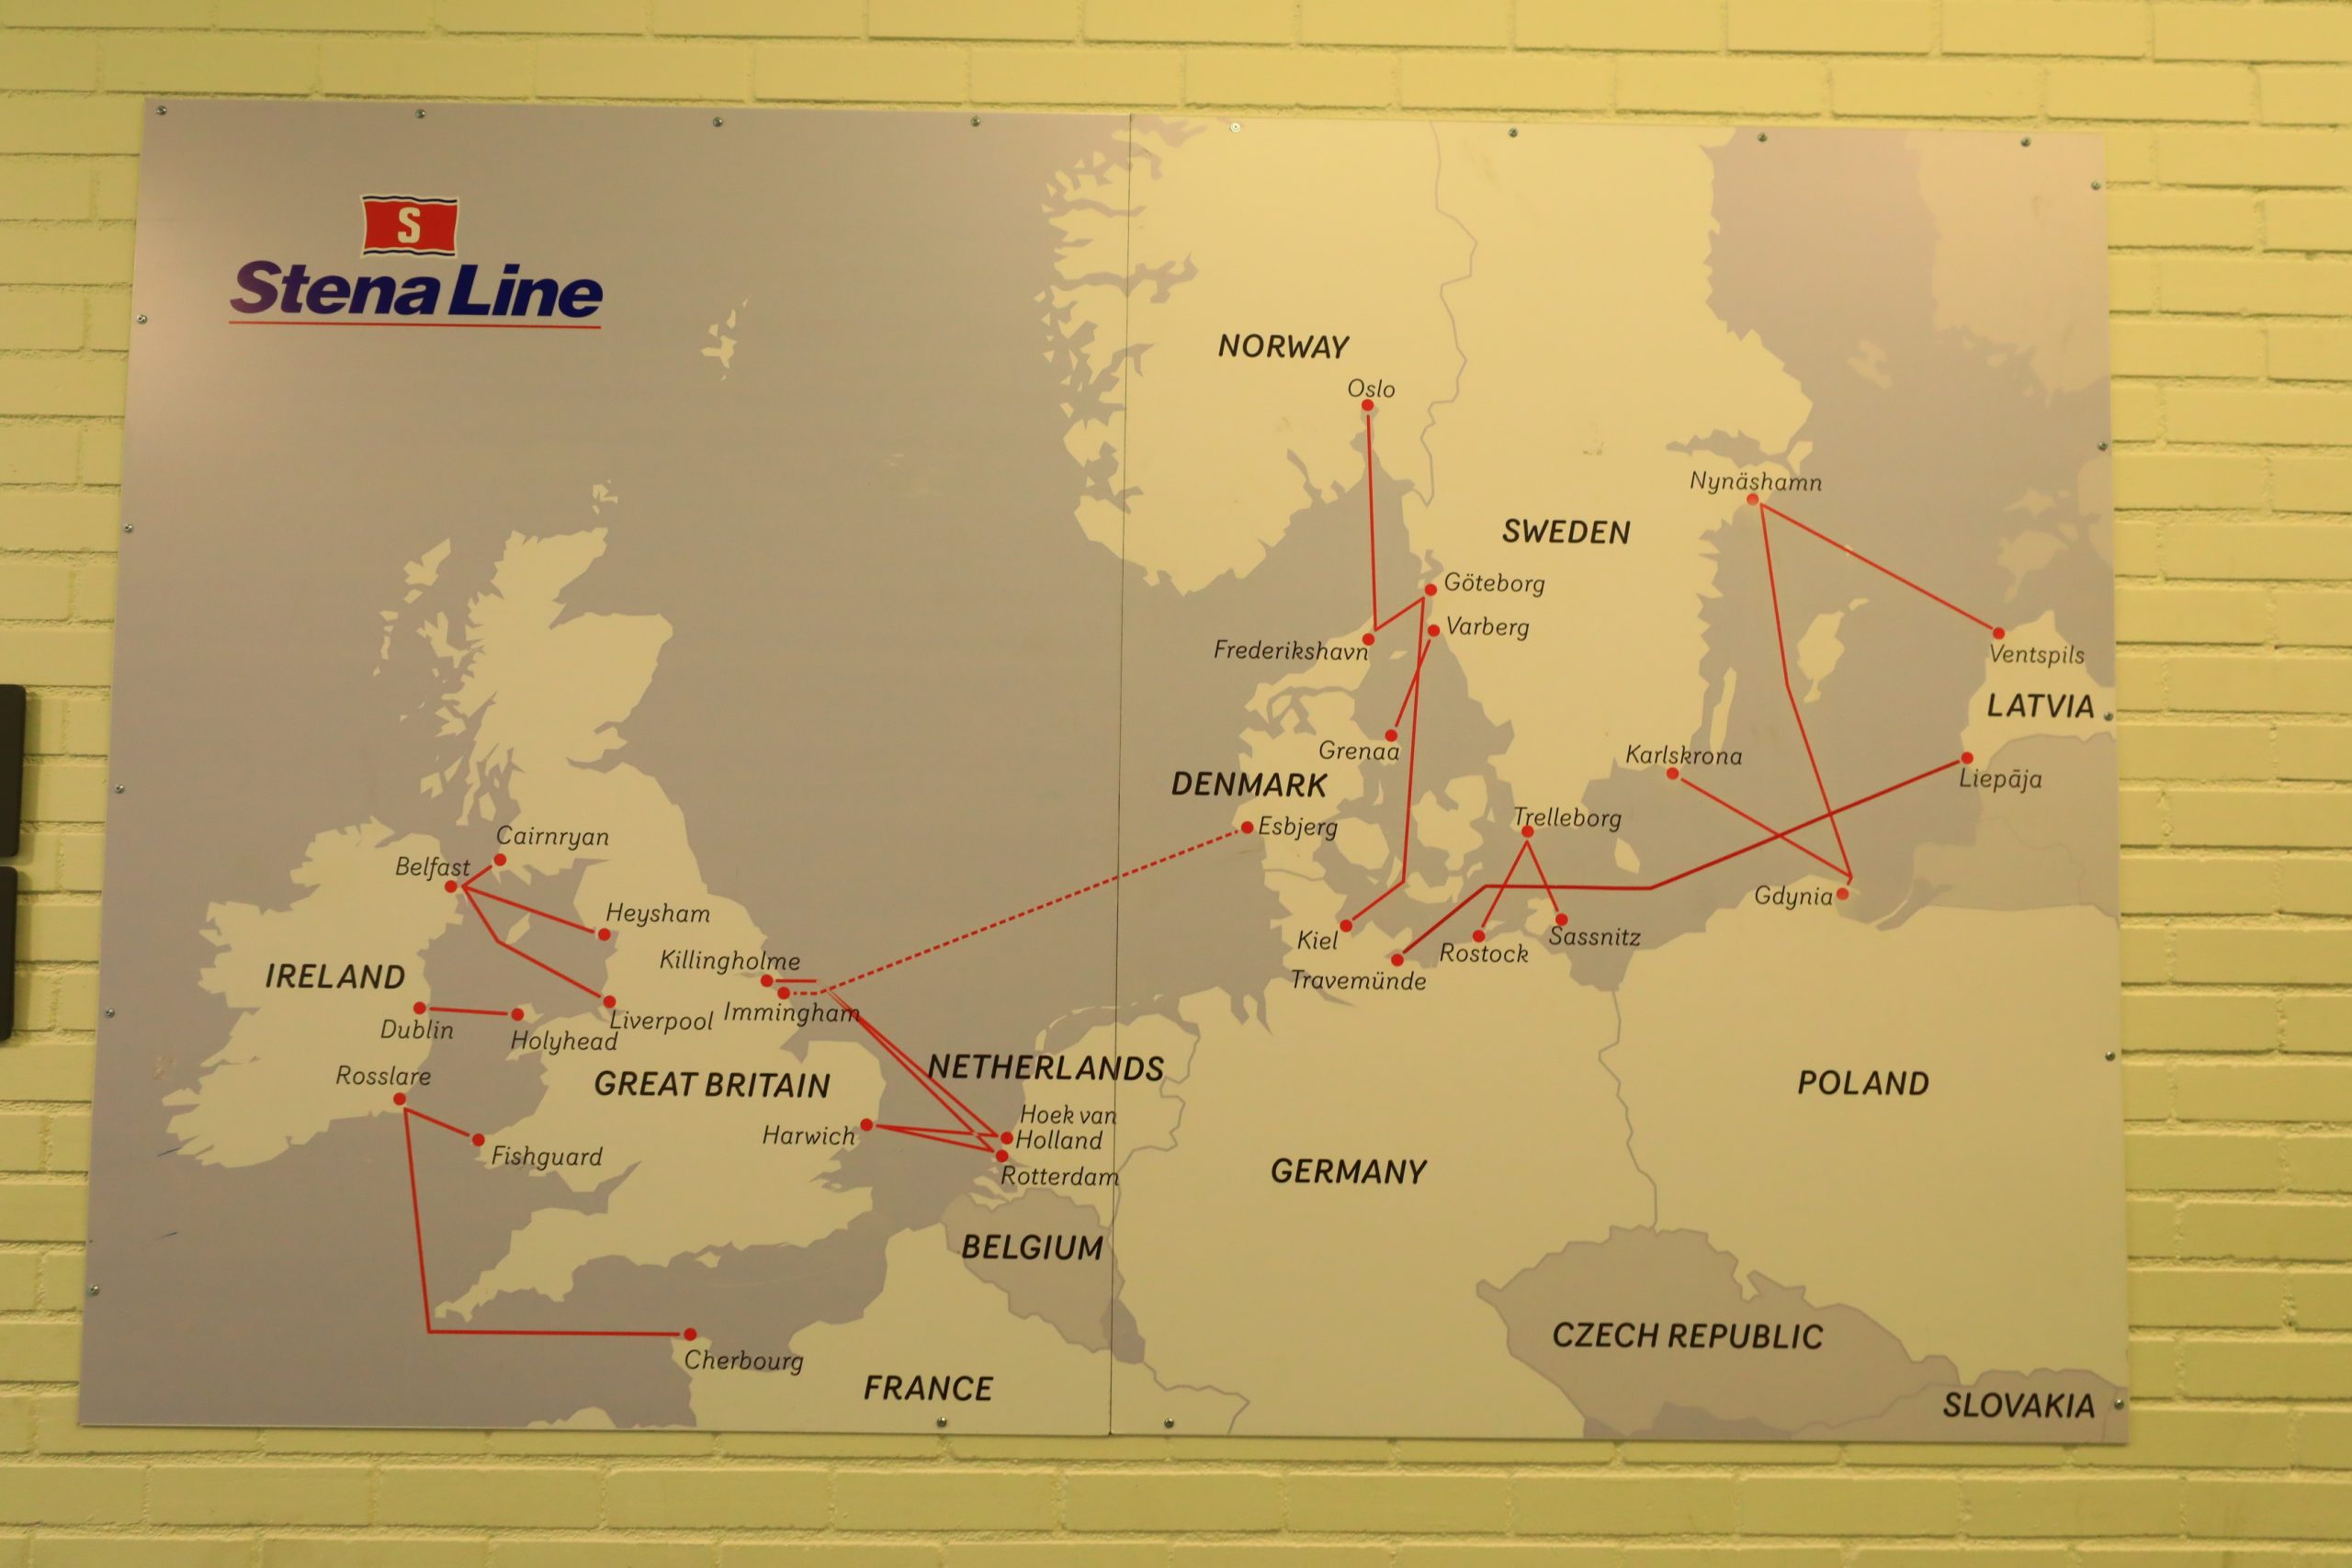 瑞典到波蘭郵輪｜Stena line Polferries，波羅的海郵輪交通，Nynäshamn到Gdańsk海盜船體驗記錄